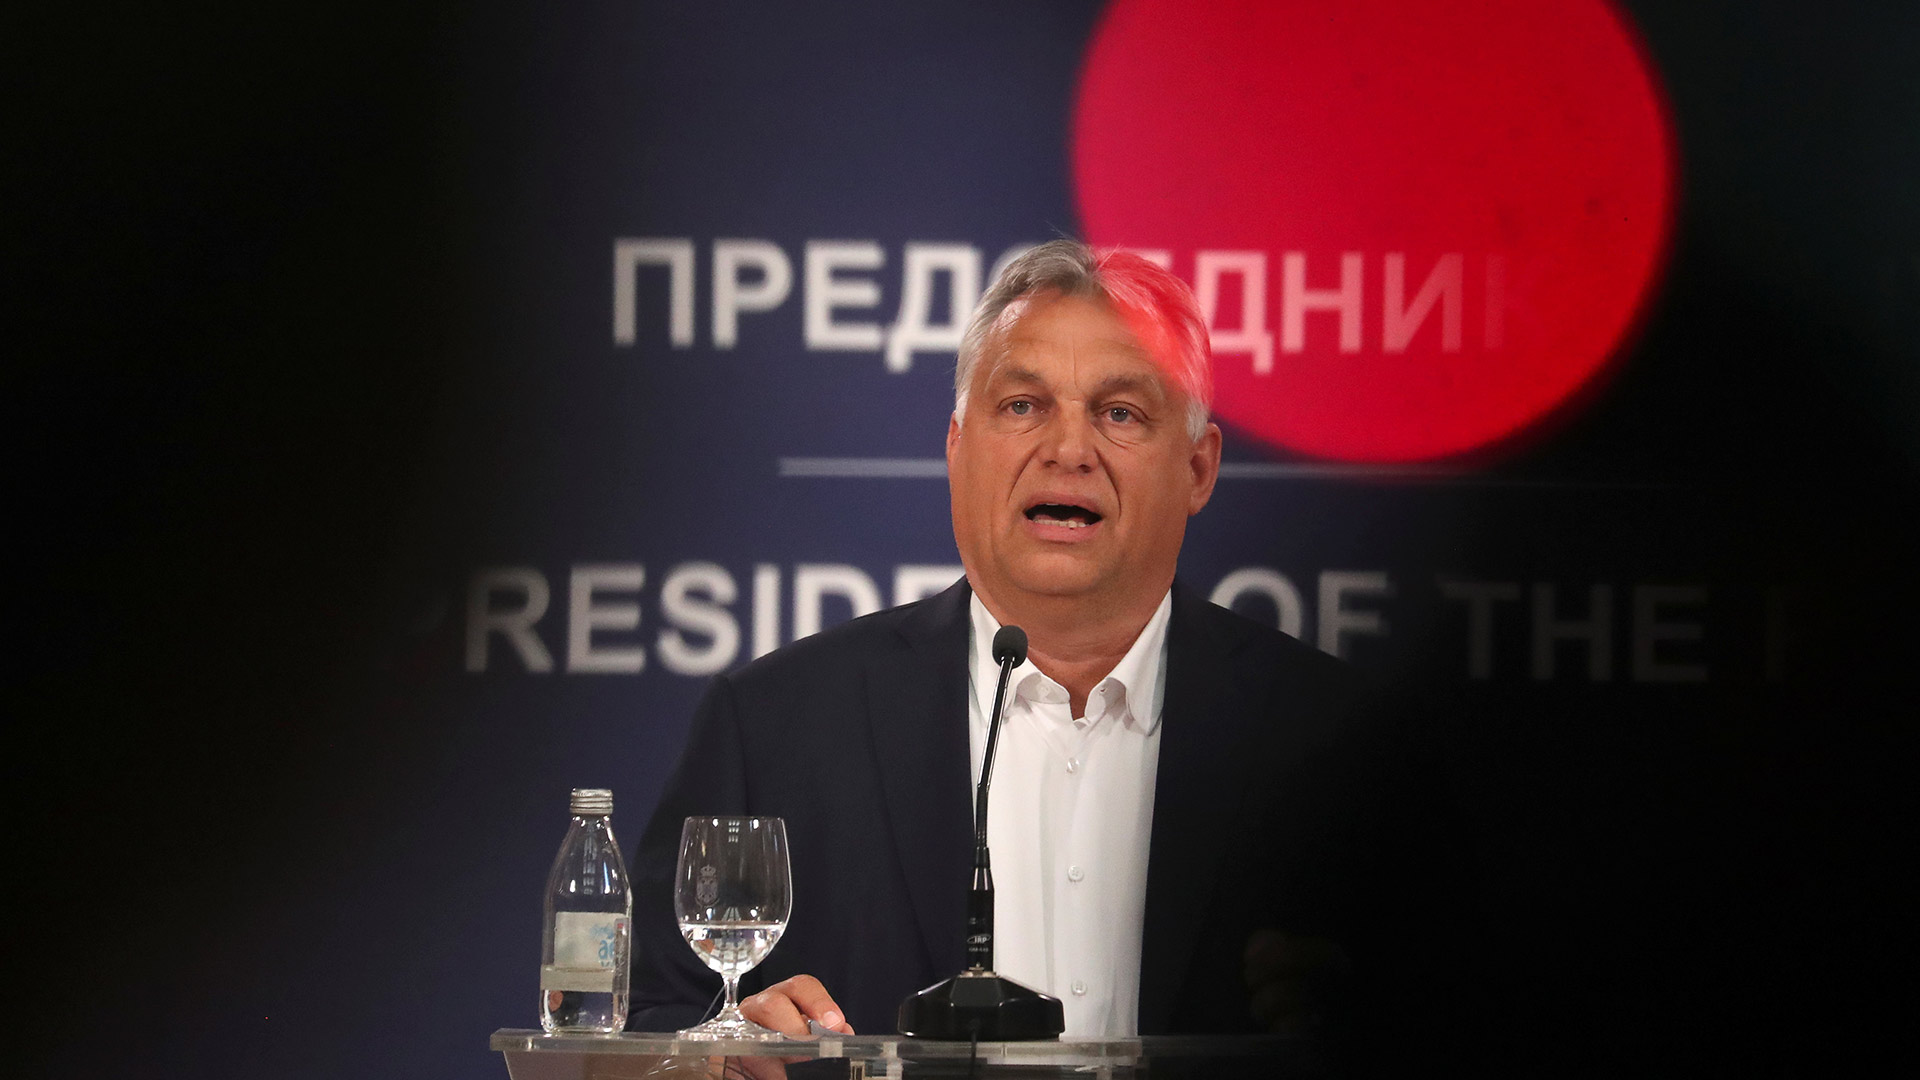 Viktor Orbán impide al colectivo trans húngaro registrar oficialmente su cambio de sexo